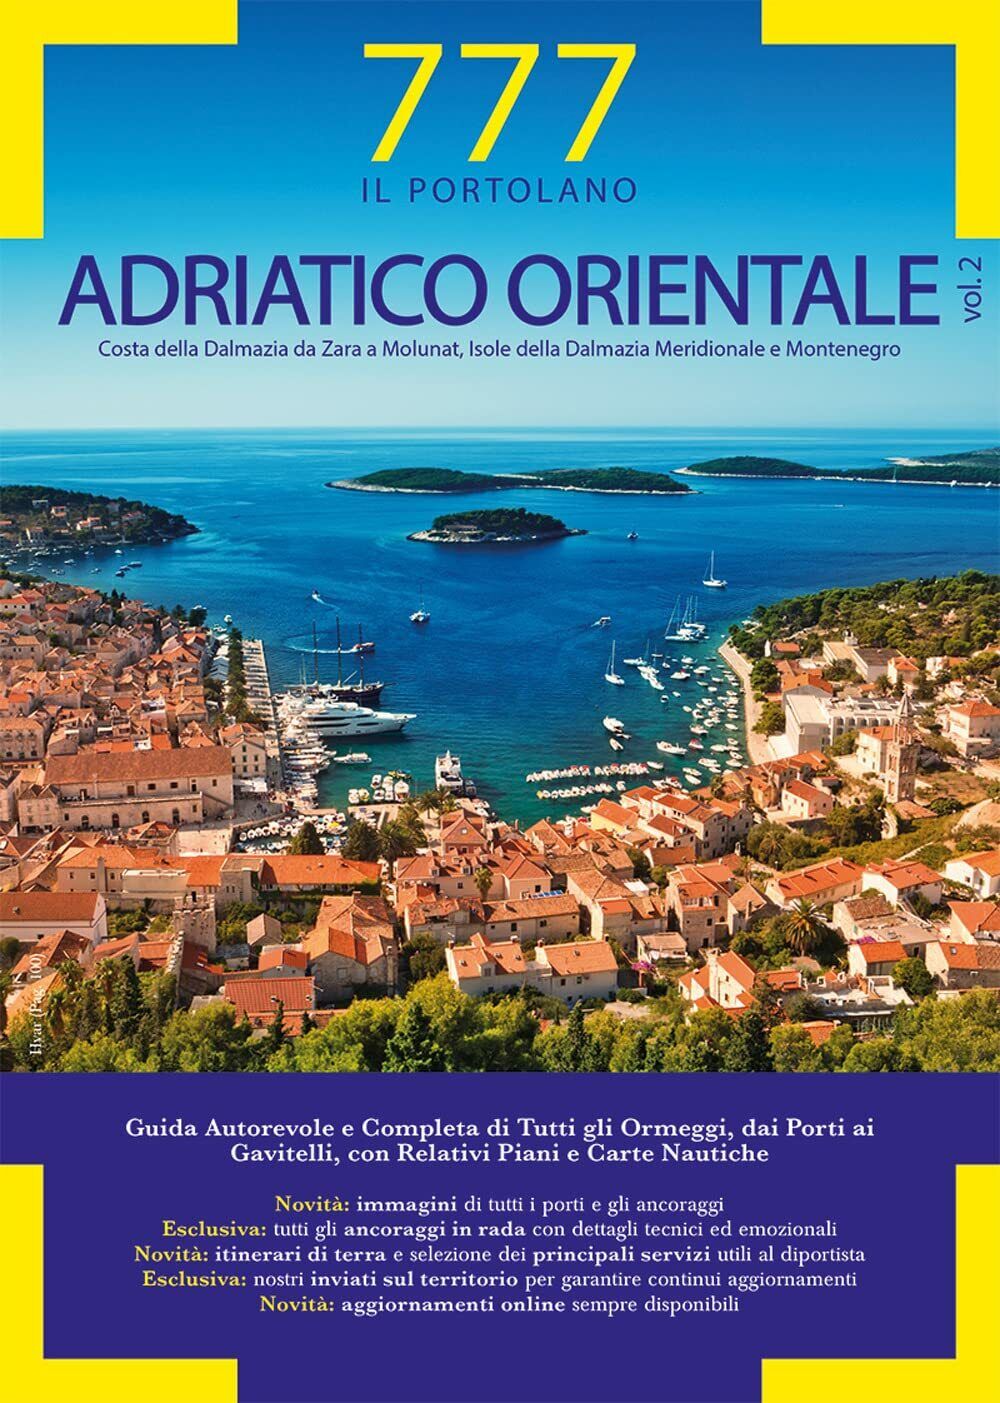 777 Adriatico orientale vol.2 - Silvestro,Sbrizzi, Magnabosco - Magnamare, 2022  libro usato